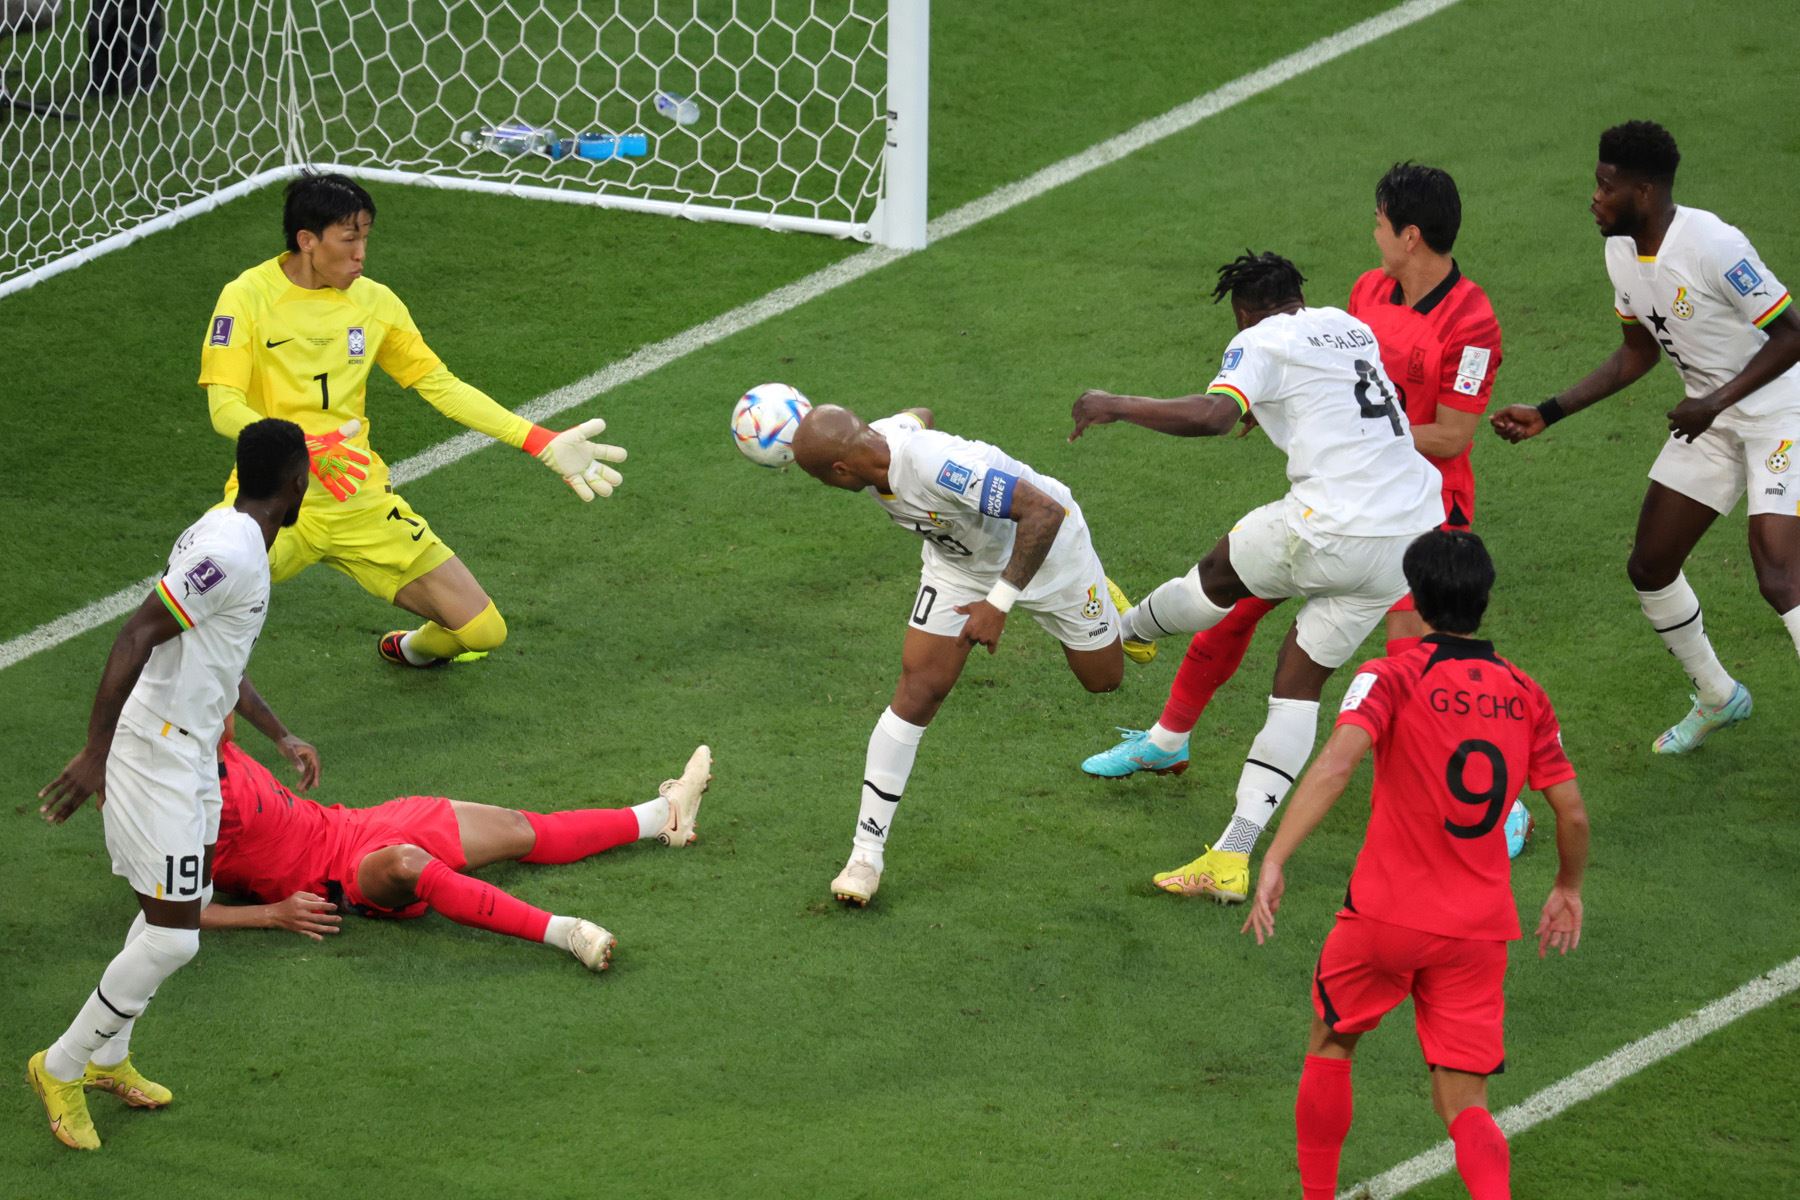 Mohammed Salisu de Ghana anota el gol inicial durante el partido de fútbol del grupo H de la Copa Mundial de la FIFA 2022 entre Corea del Sur y Ghana en el Education City Stadium de Doha, Catar. Foto: EFE